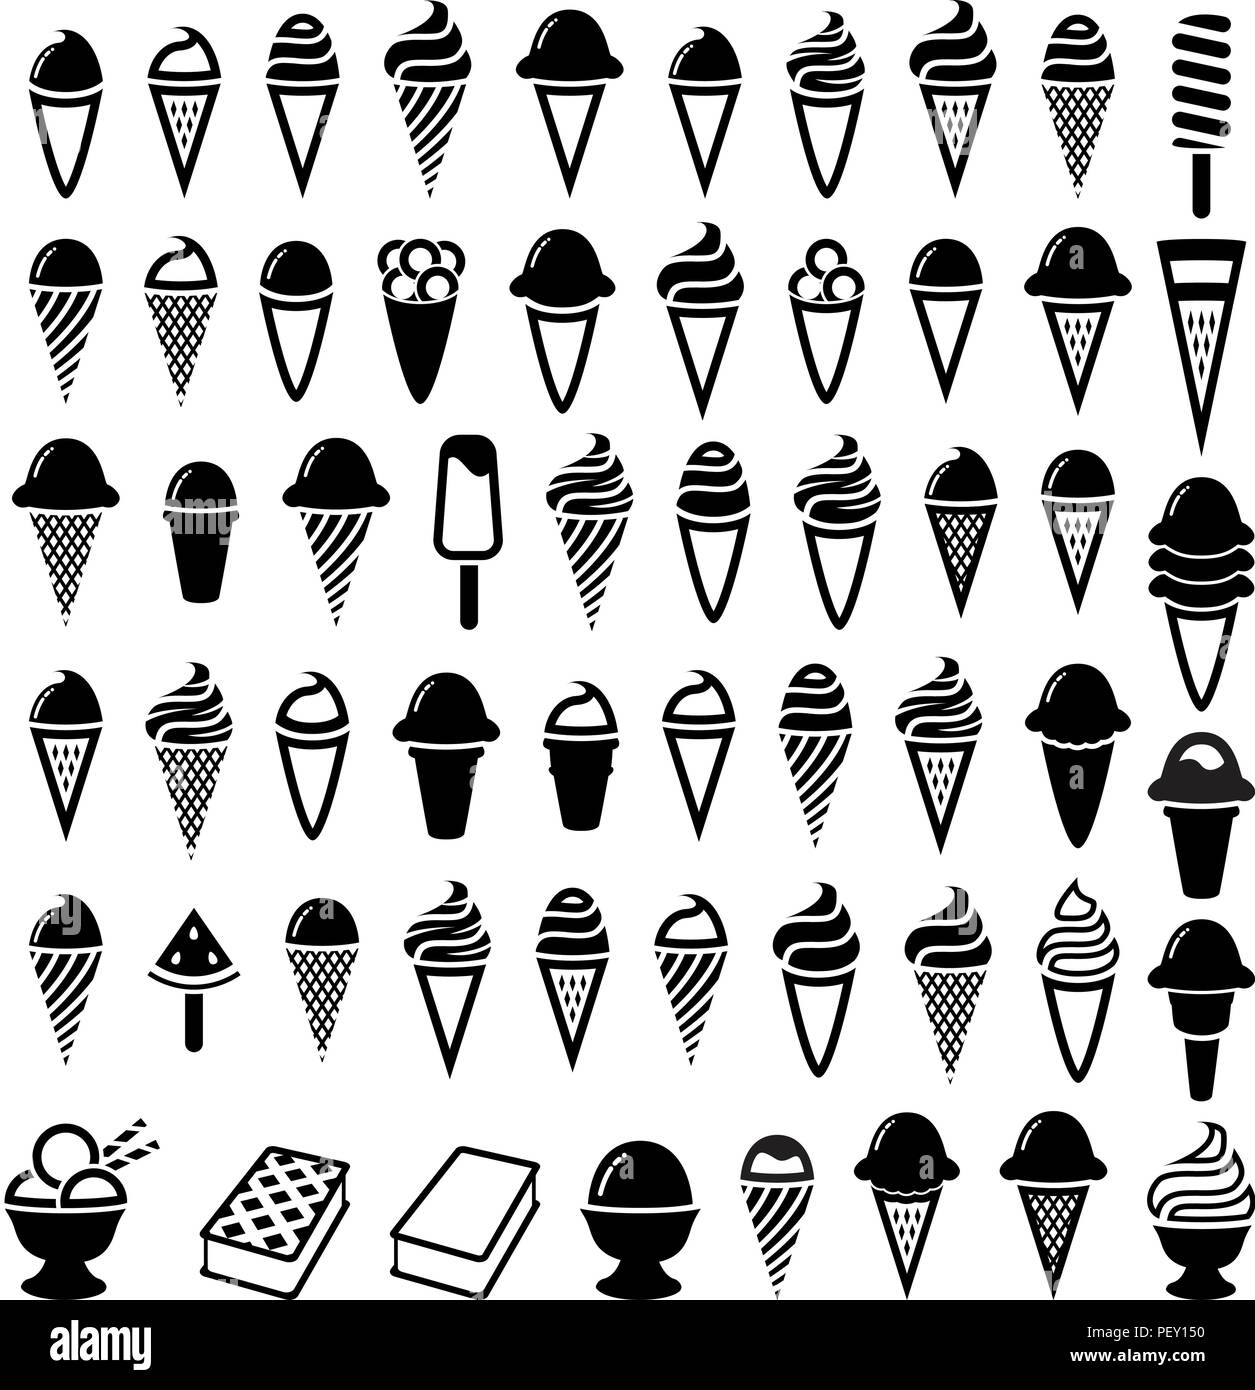 Vector noir et blanc crème glace icecream wafer. icônes de cônes et cuvettes. sucettes glacées et glaces symboles bol Illustration de Vecteur